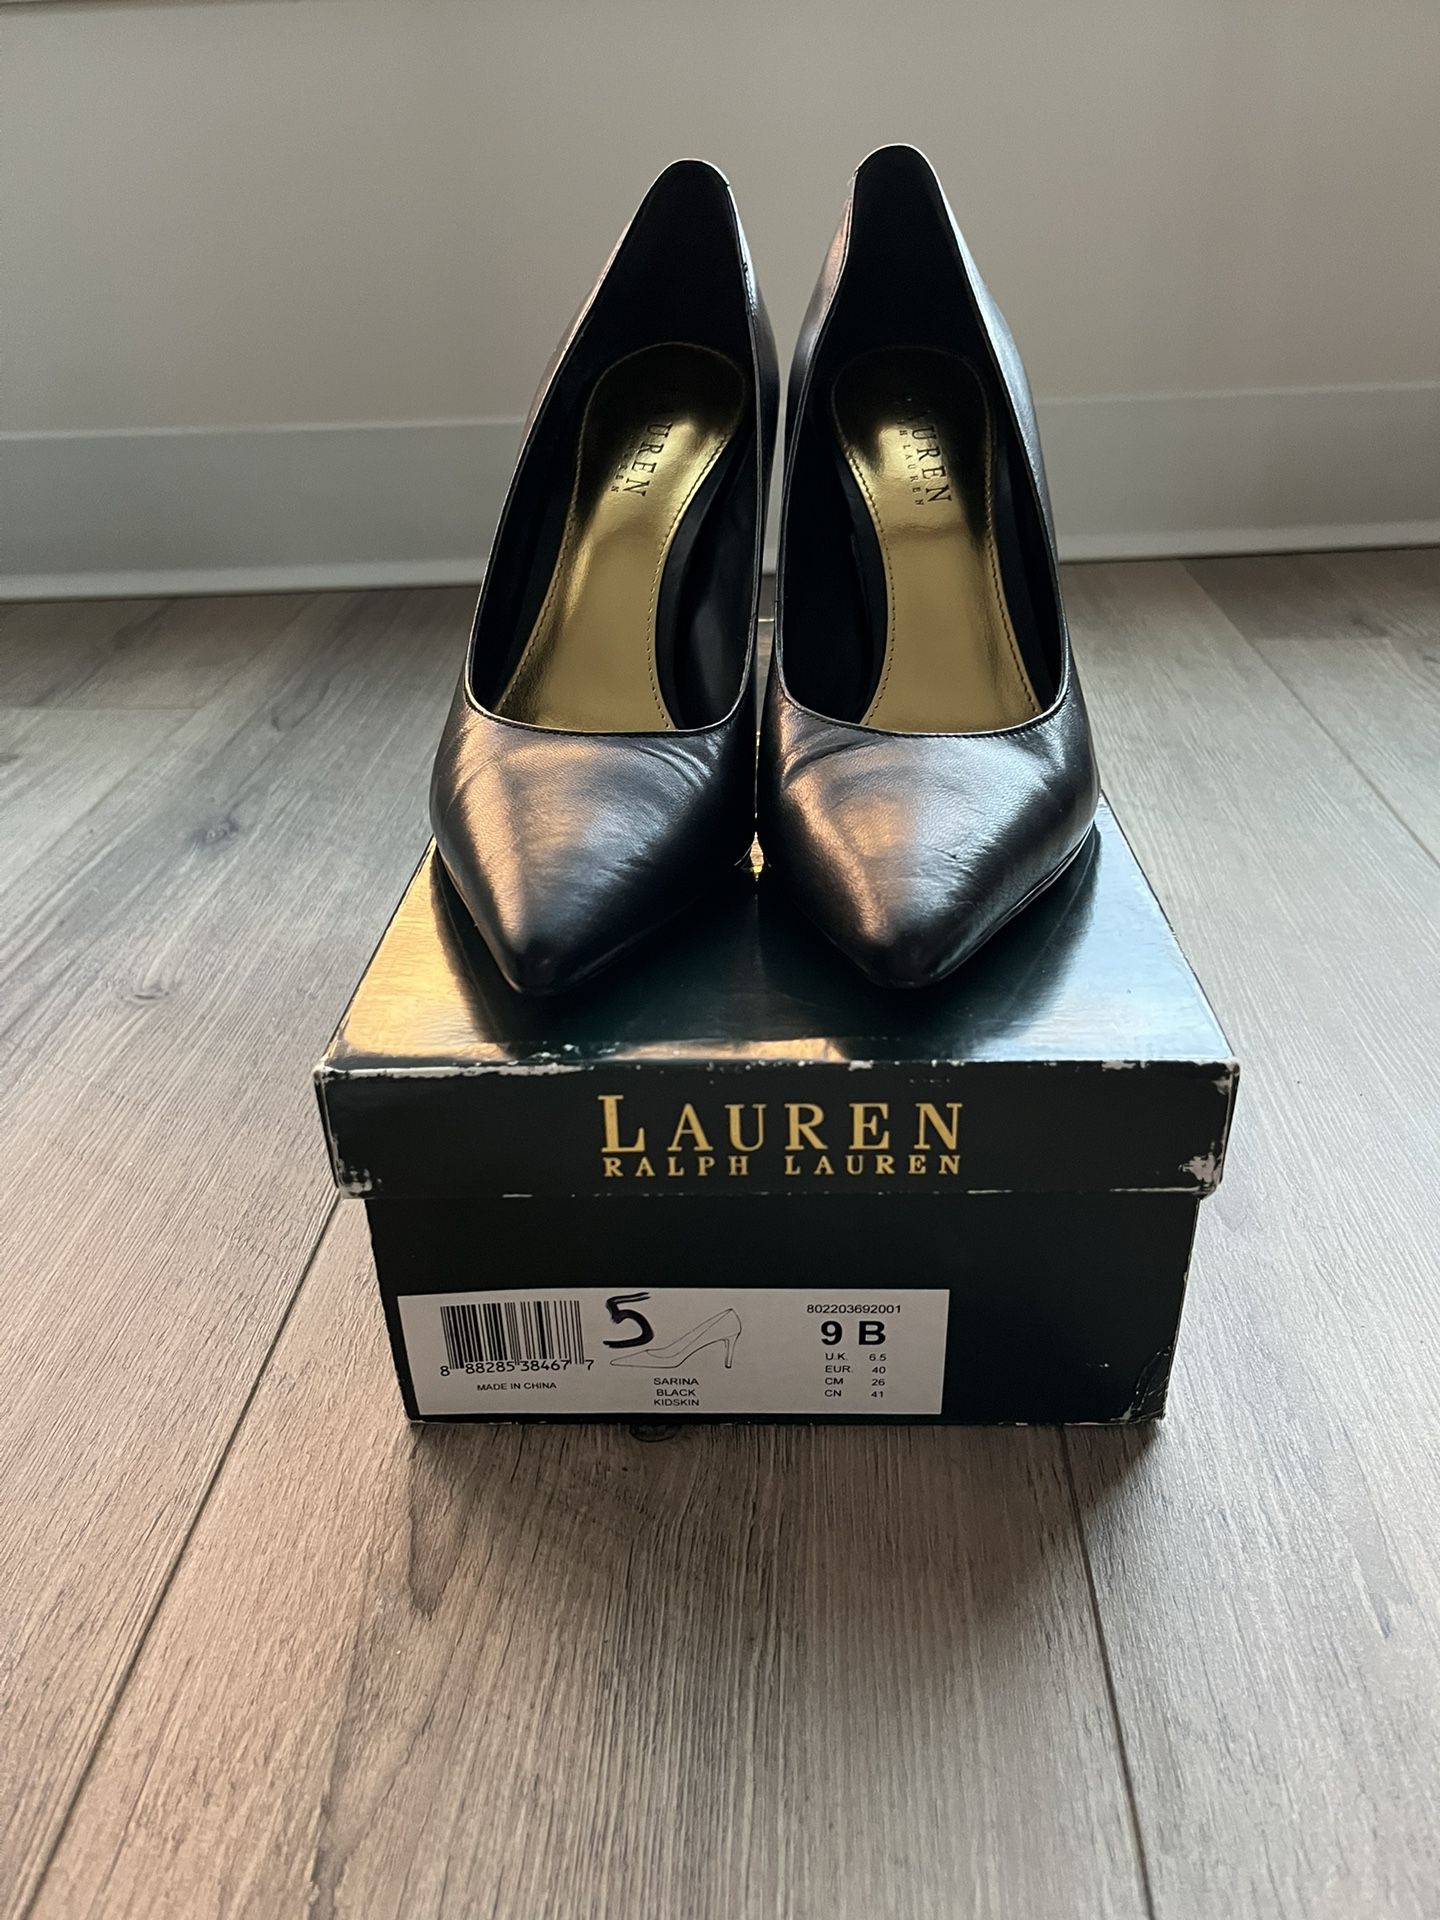 Ralph Lauren 'Sarina' Black Stiletto High Heels